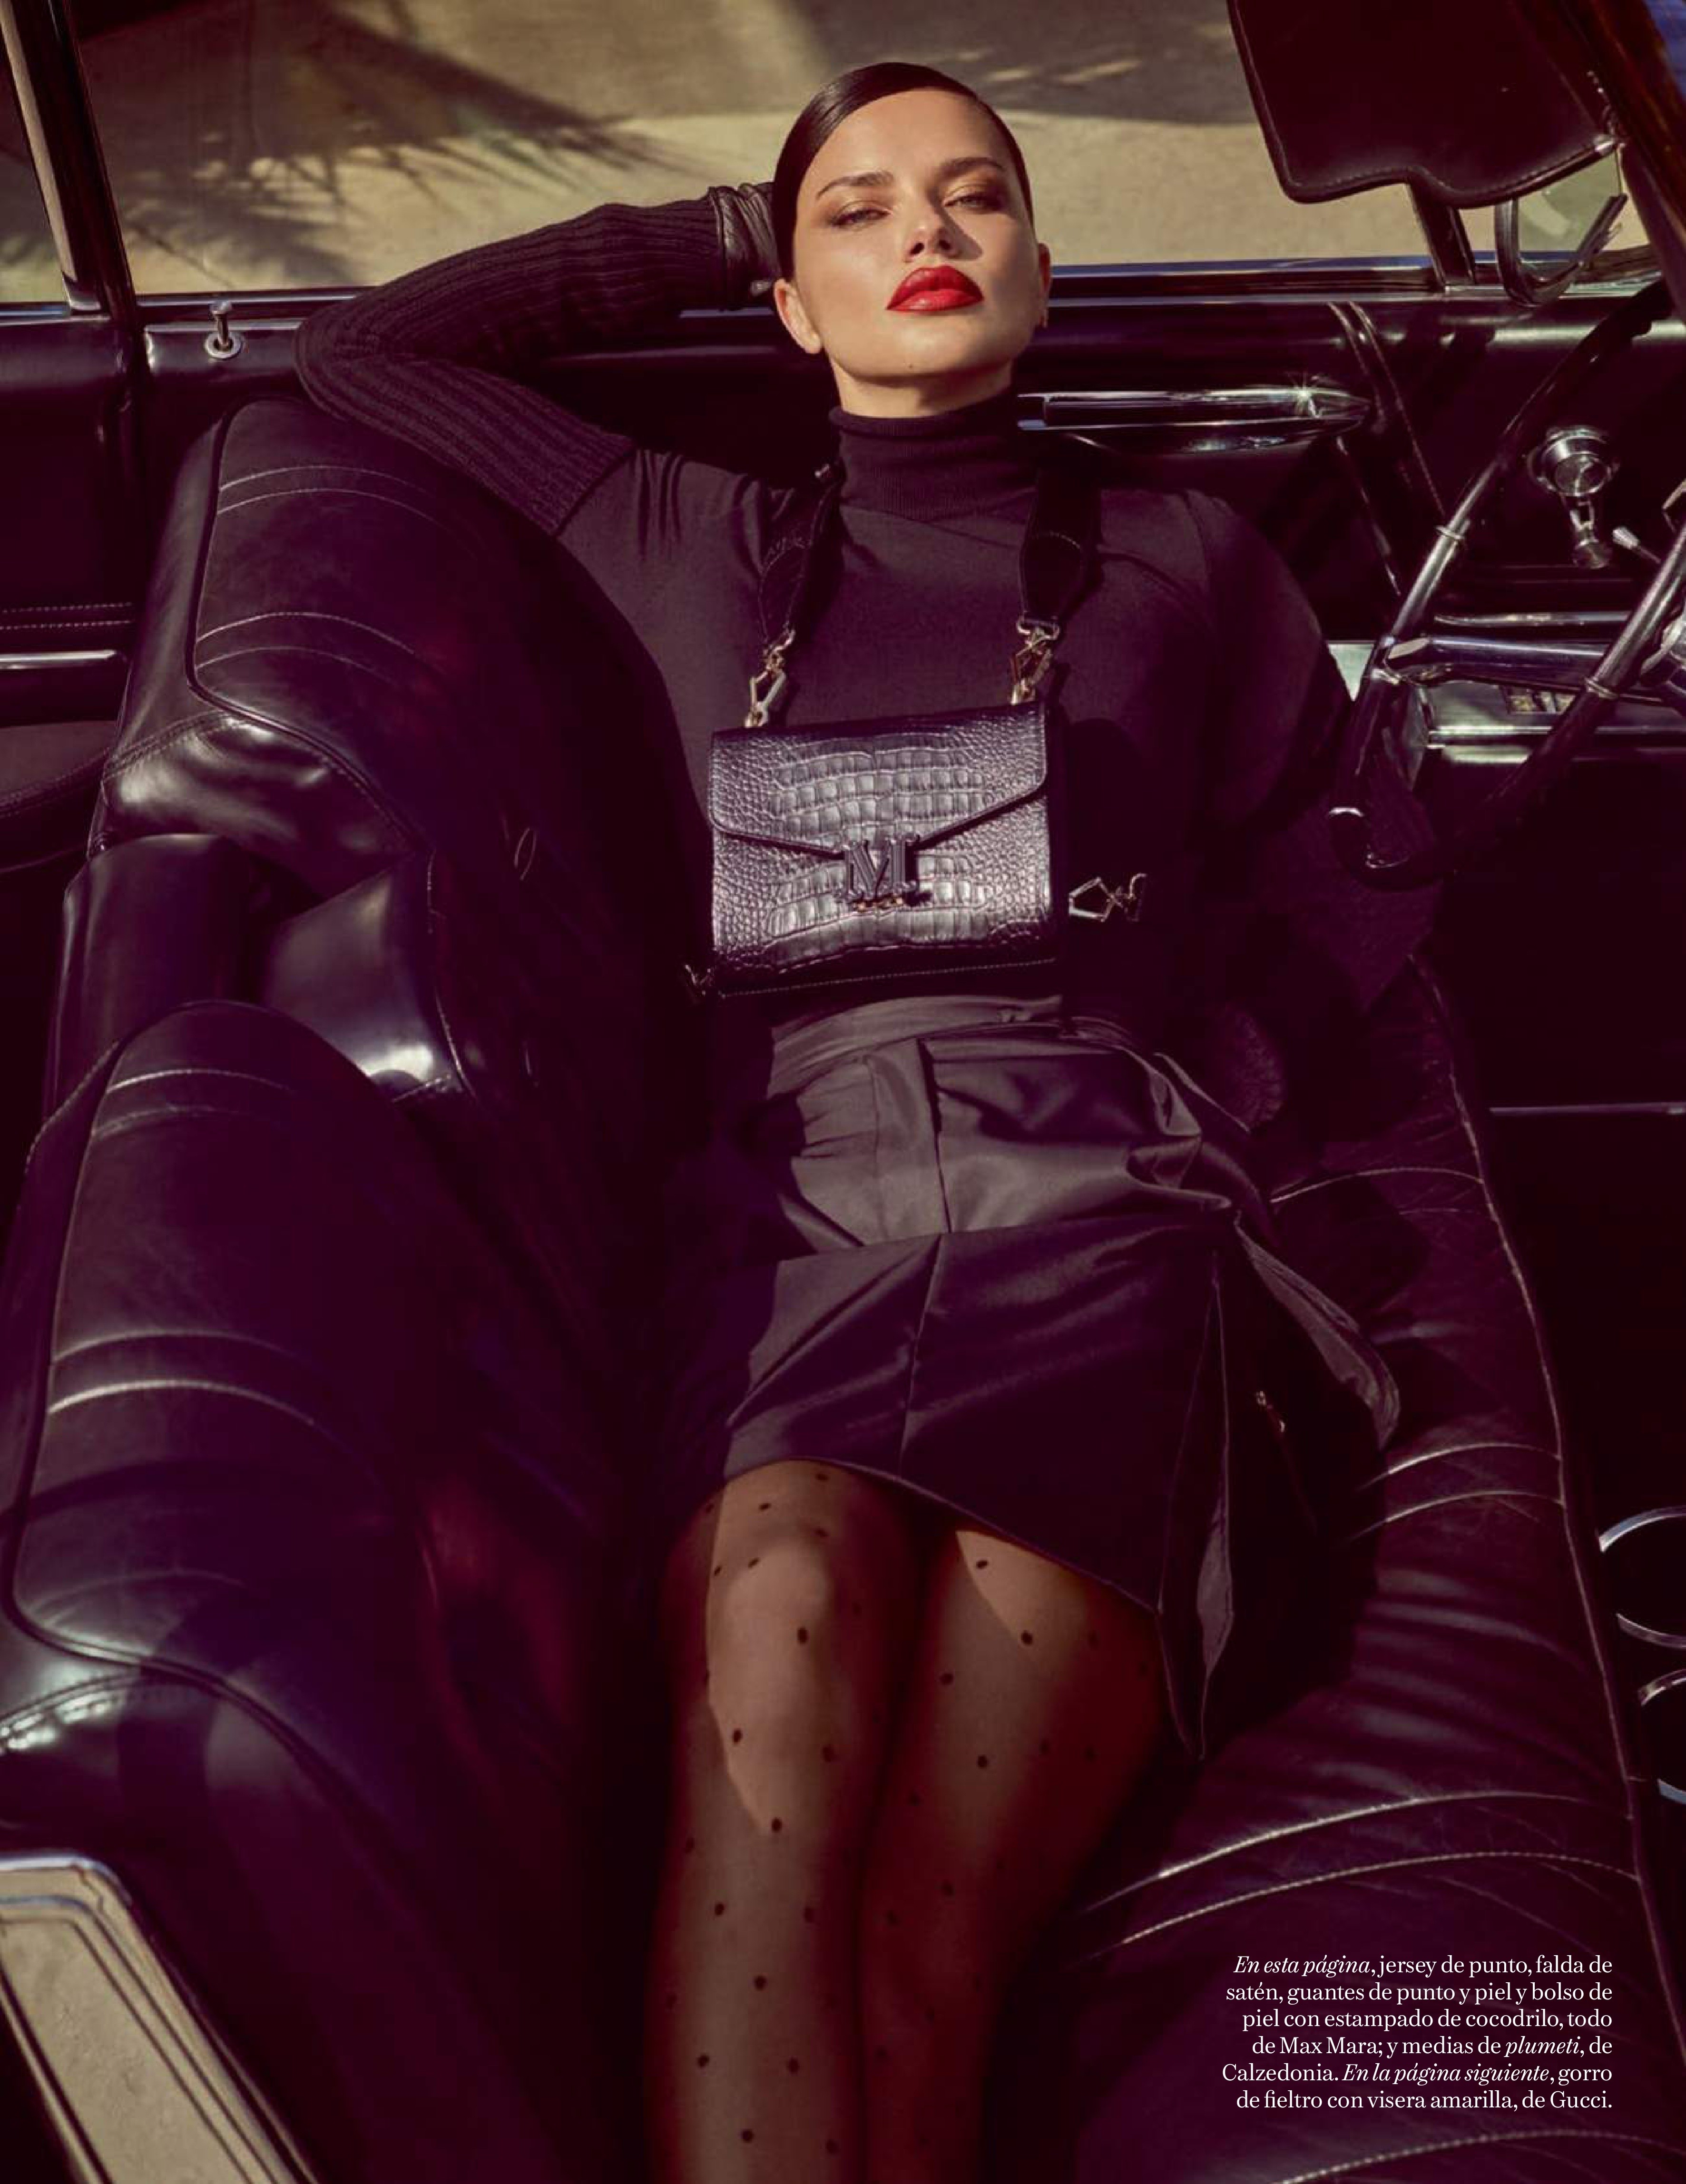 Adriana Lima Irina Shayk TheFappening.Pro 8 - Adriana Lima & Irina Shayk for Vogue Spain (22 Photos)